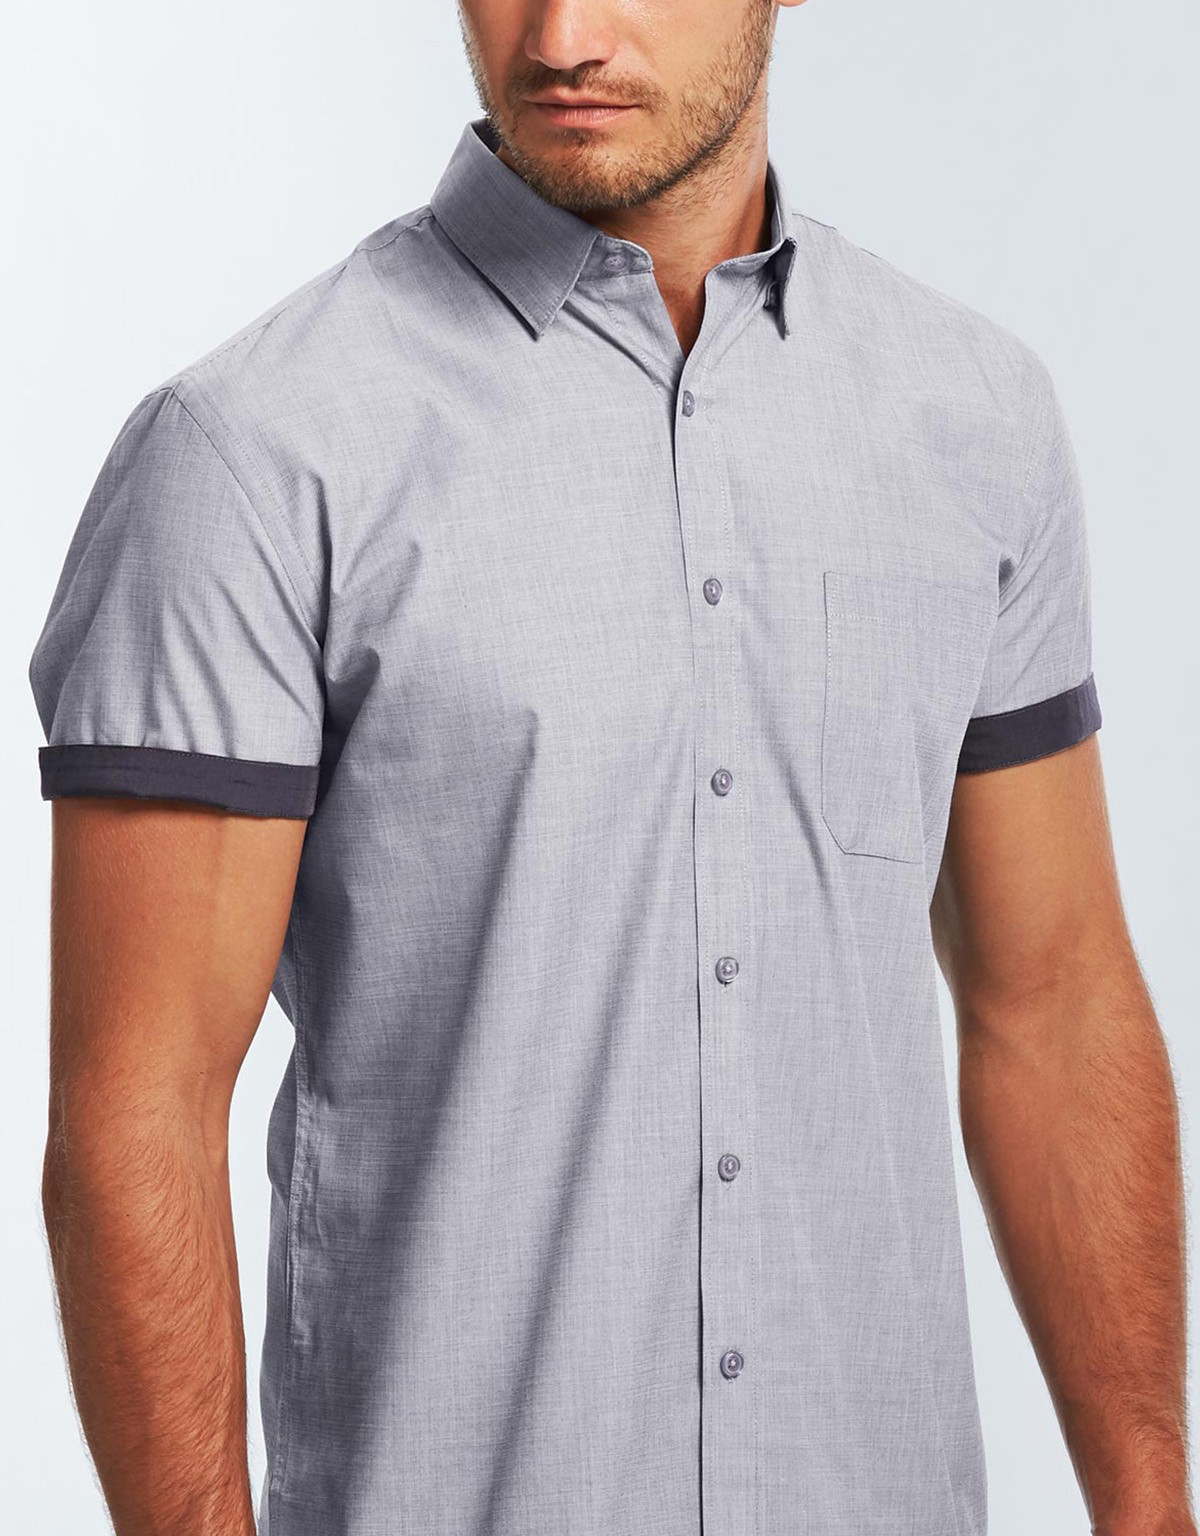 Big Mens Clothing Big Mens Short Sleeve Shirt Save up to 25%